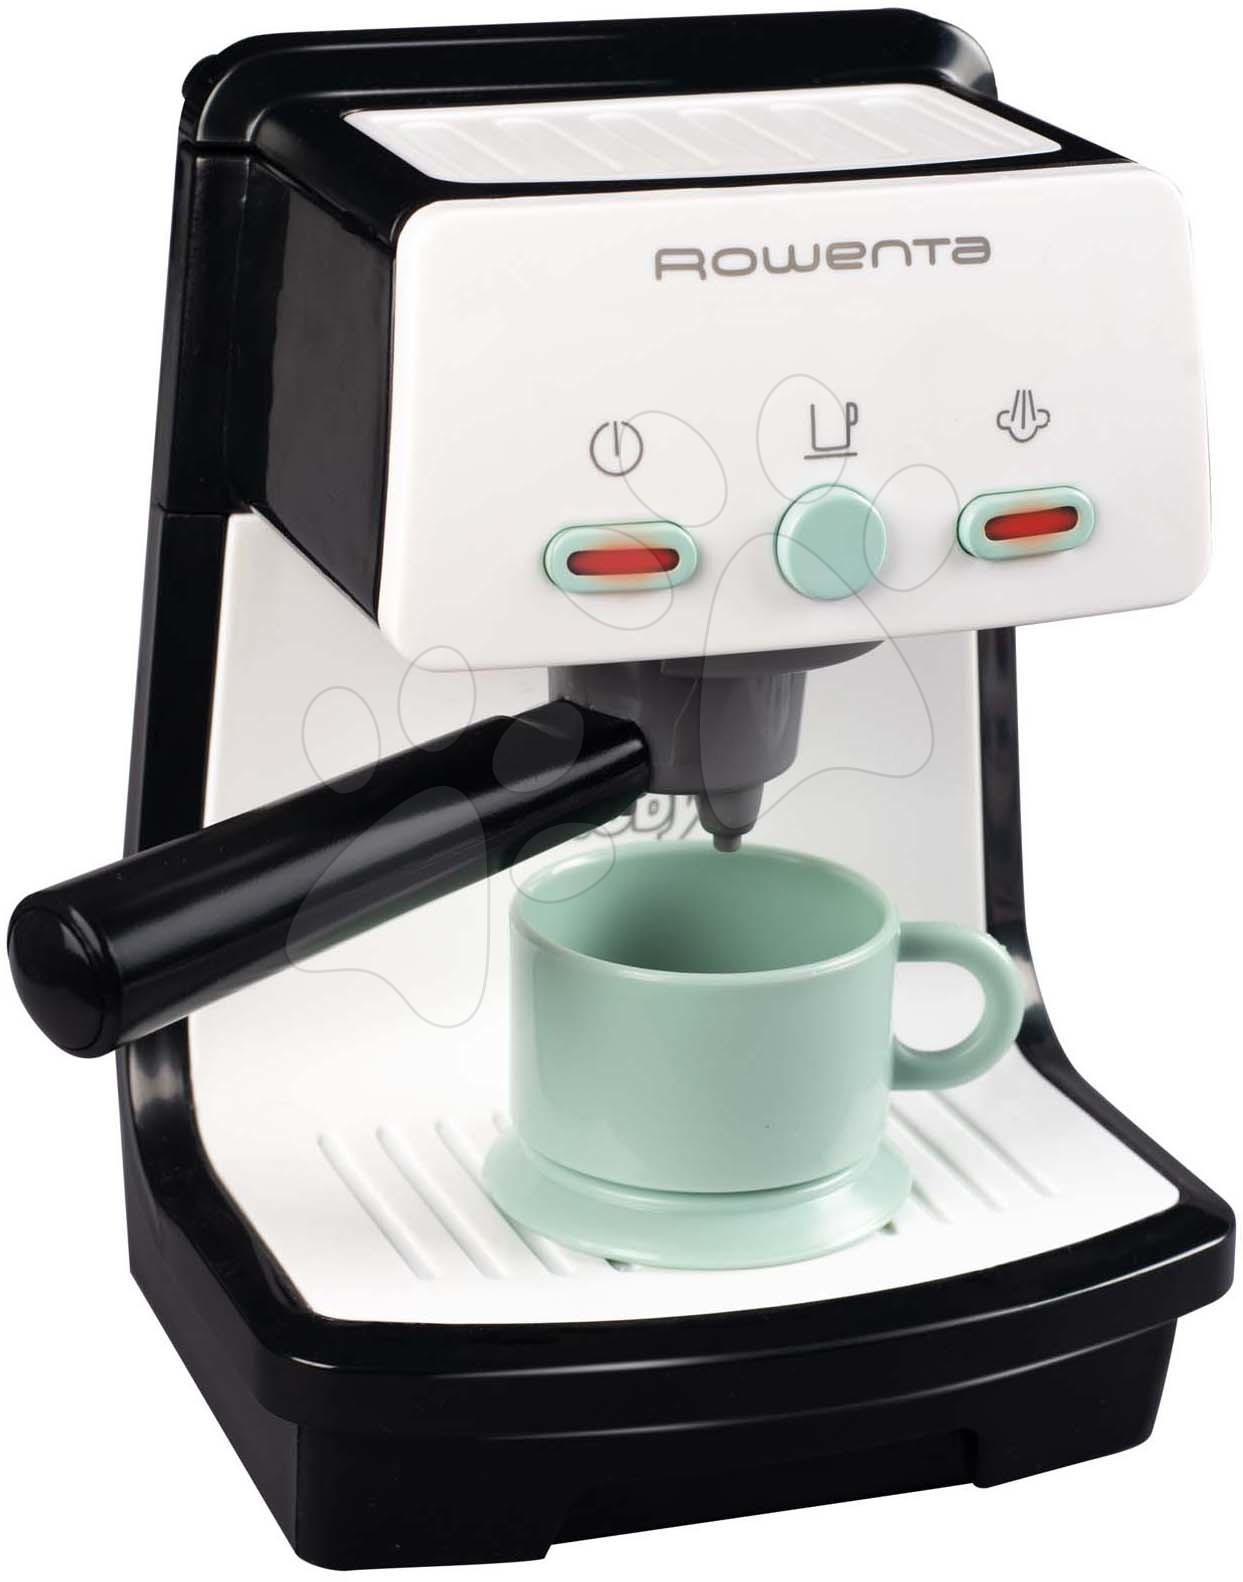 Spotrebiče do kuchynky - Espresso kávovar elektronický Rowenta Electronic Smoby so zvukom a svetlom a šálka na kávu šedo-olivový